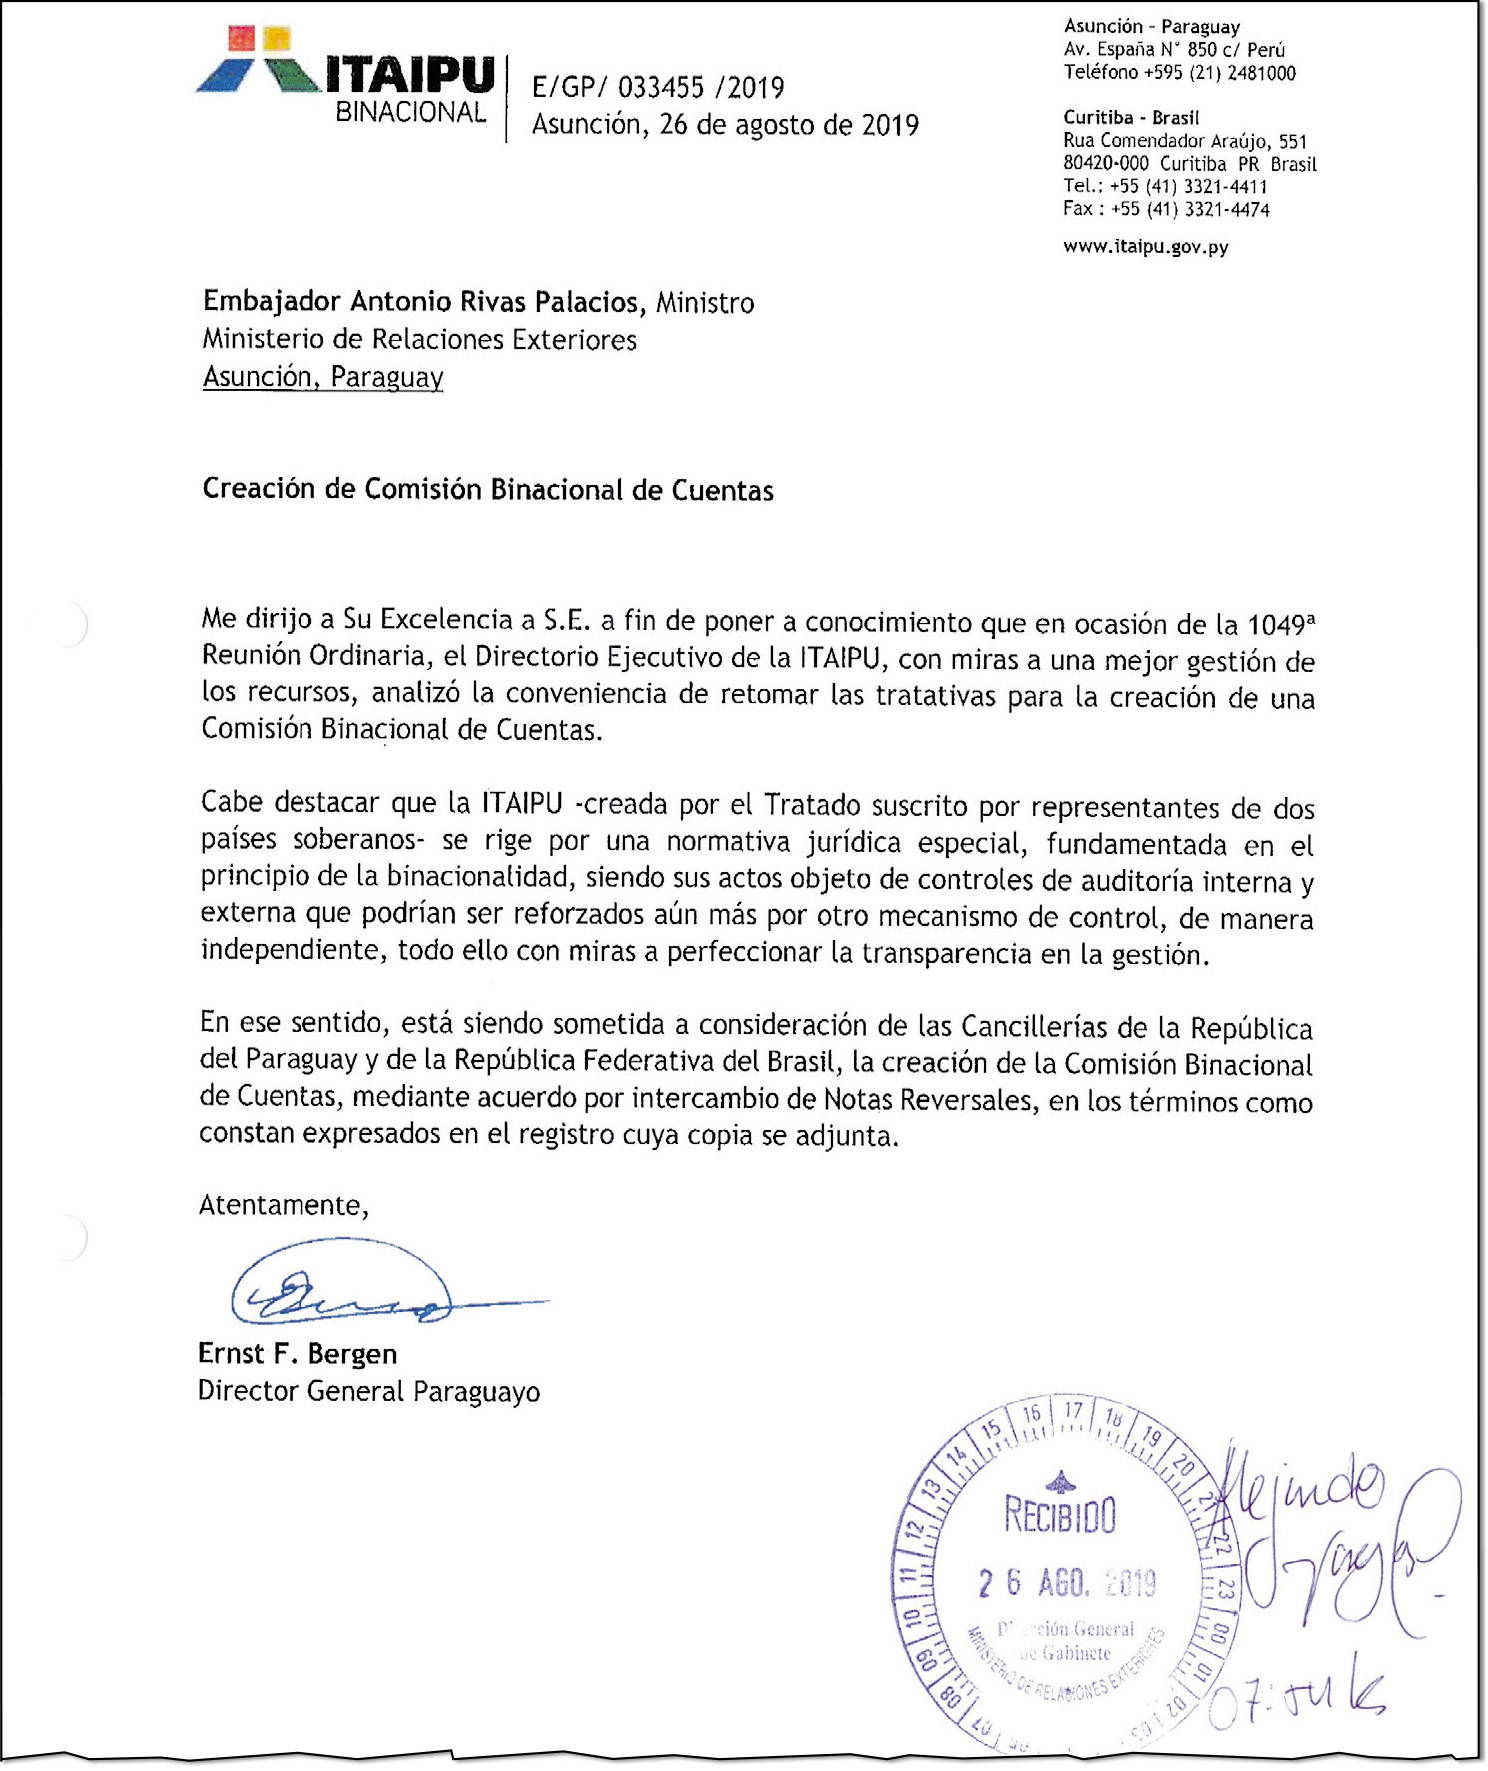 El 26 de agosto de 2019, el entonces director de Itaipú, Ernst Bergen, pidió retomar las tratativas para la creación de la Comisión Binacional de Cuentas de Itaipú.